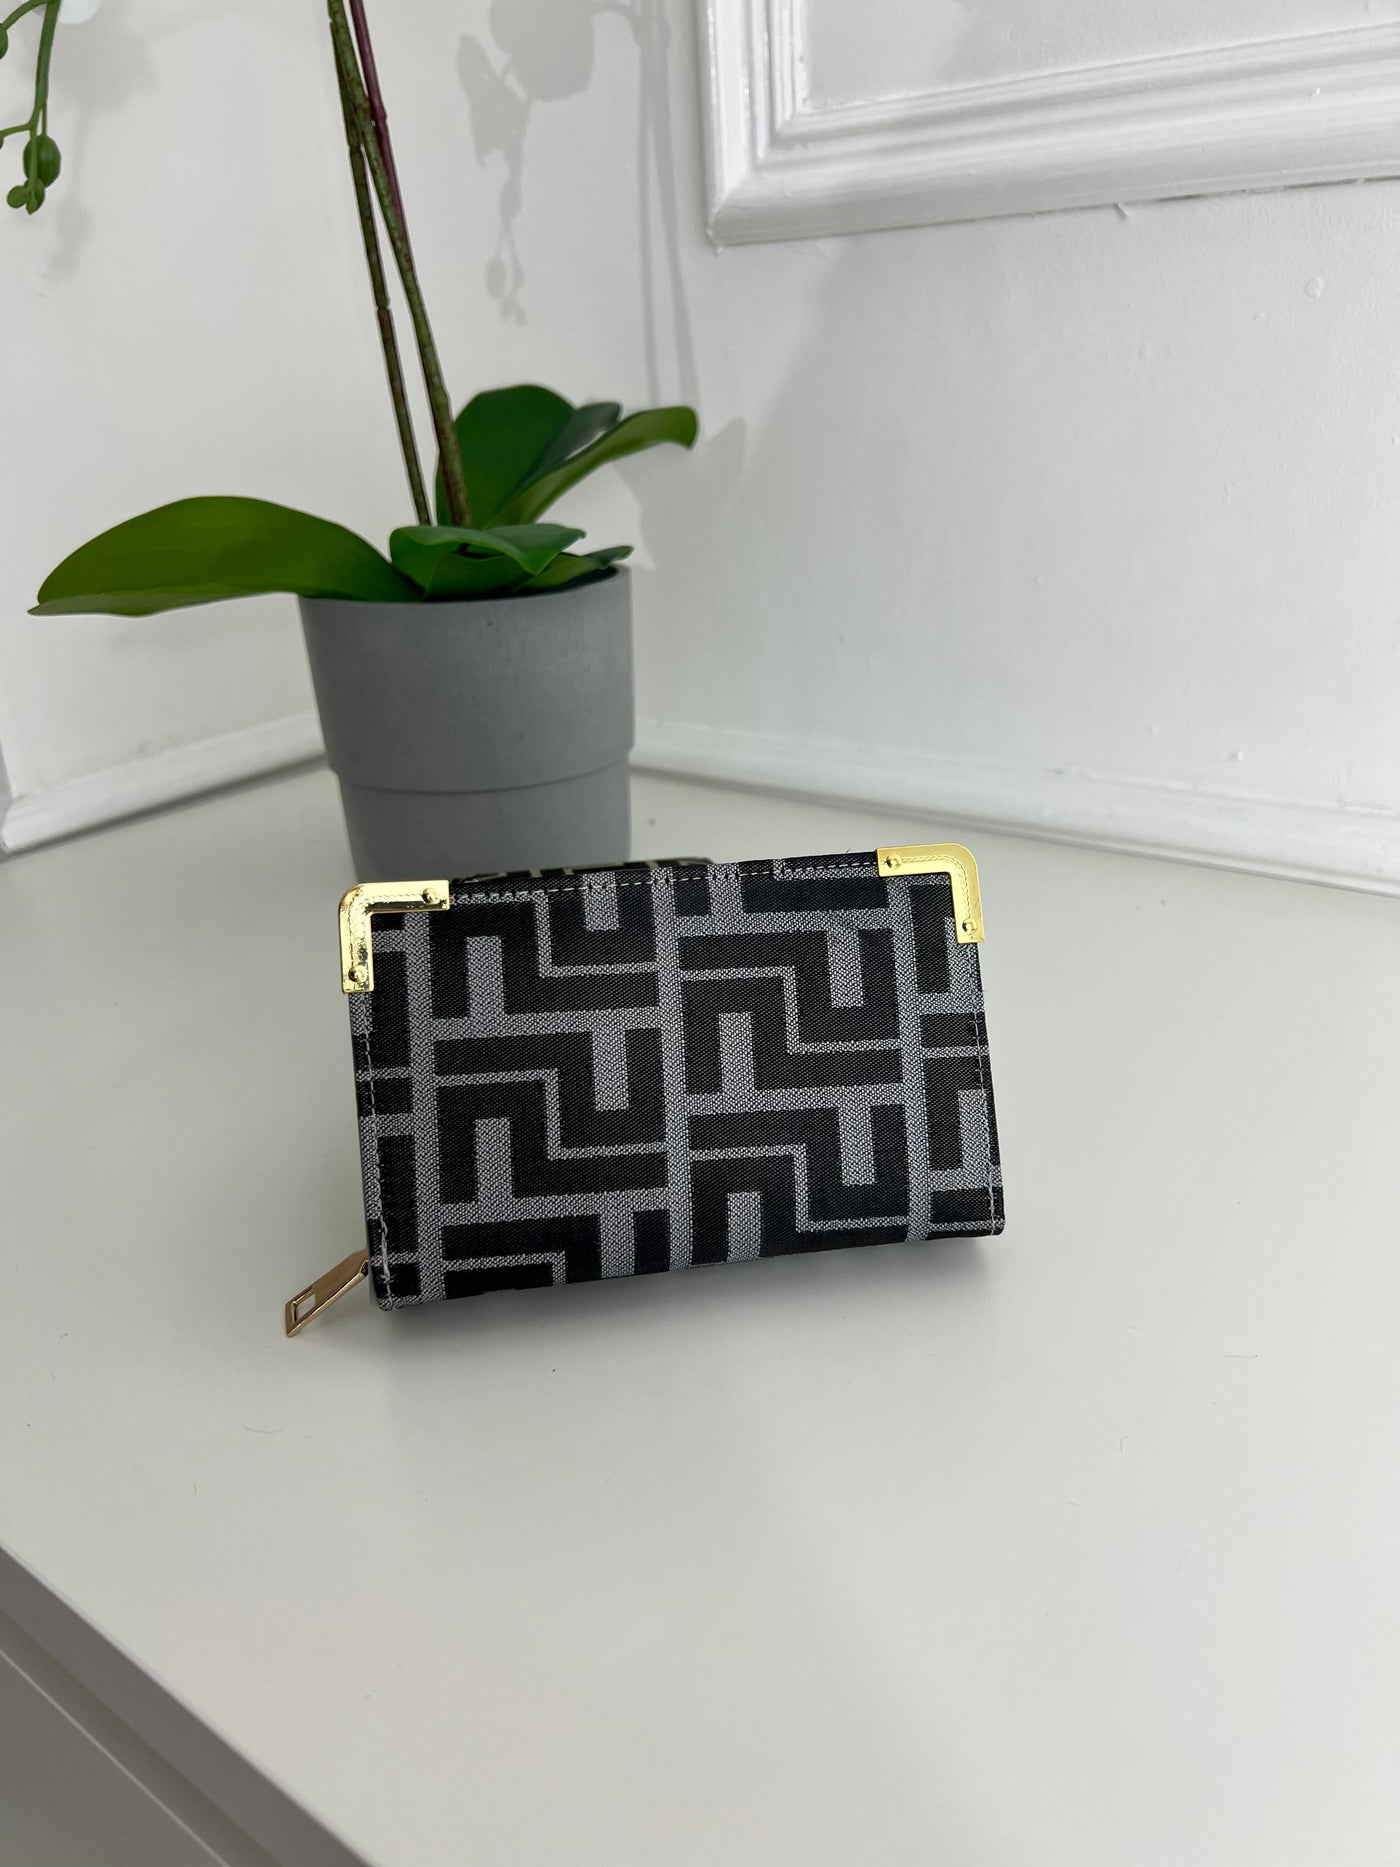 Grey FF inspired purse